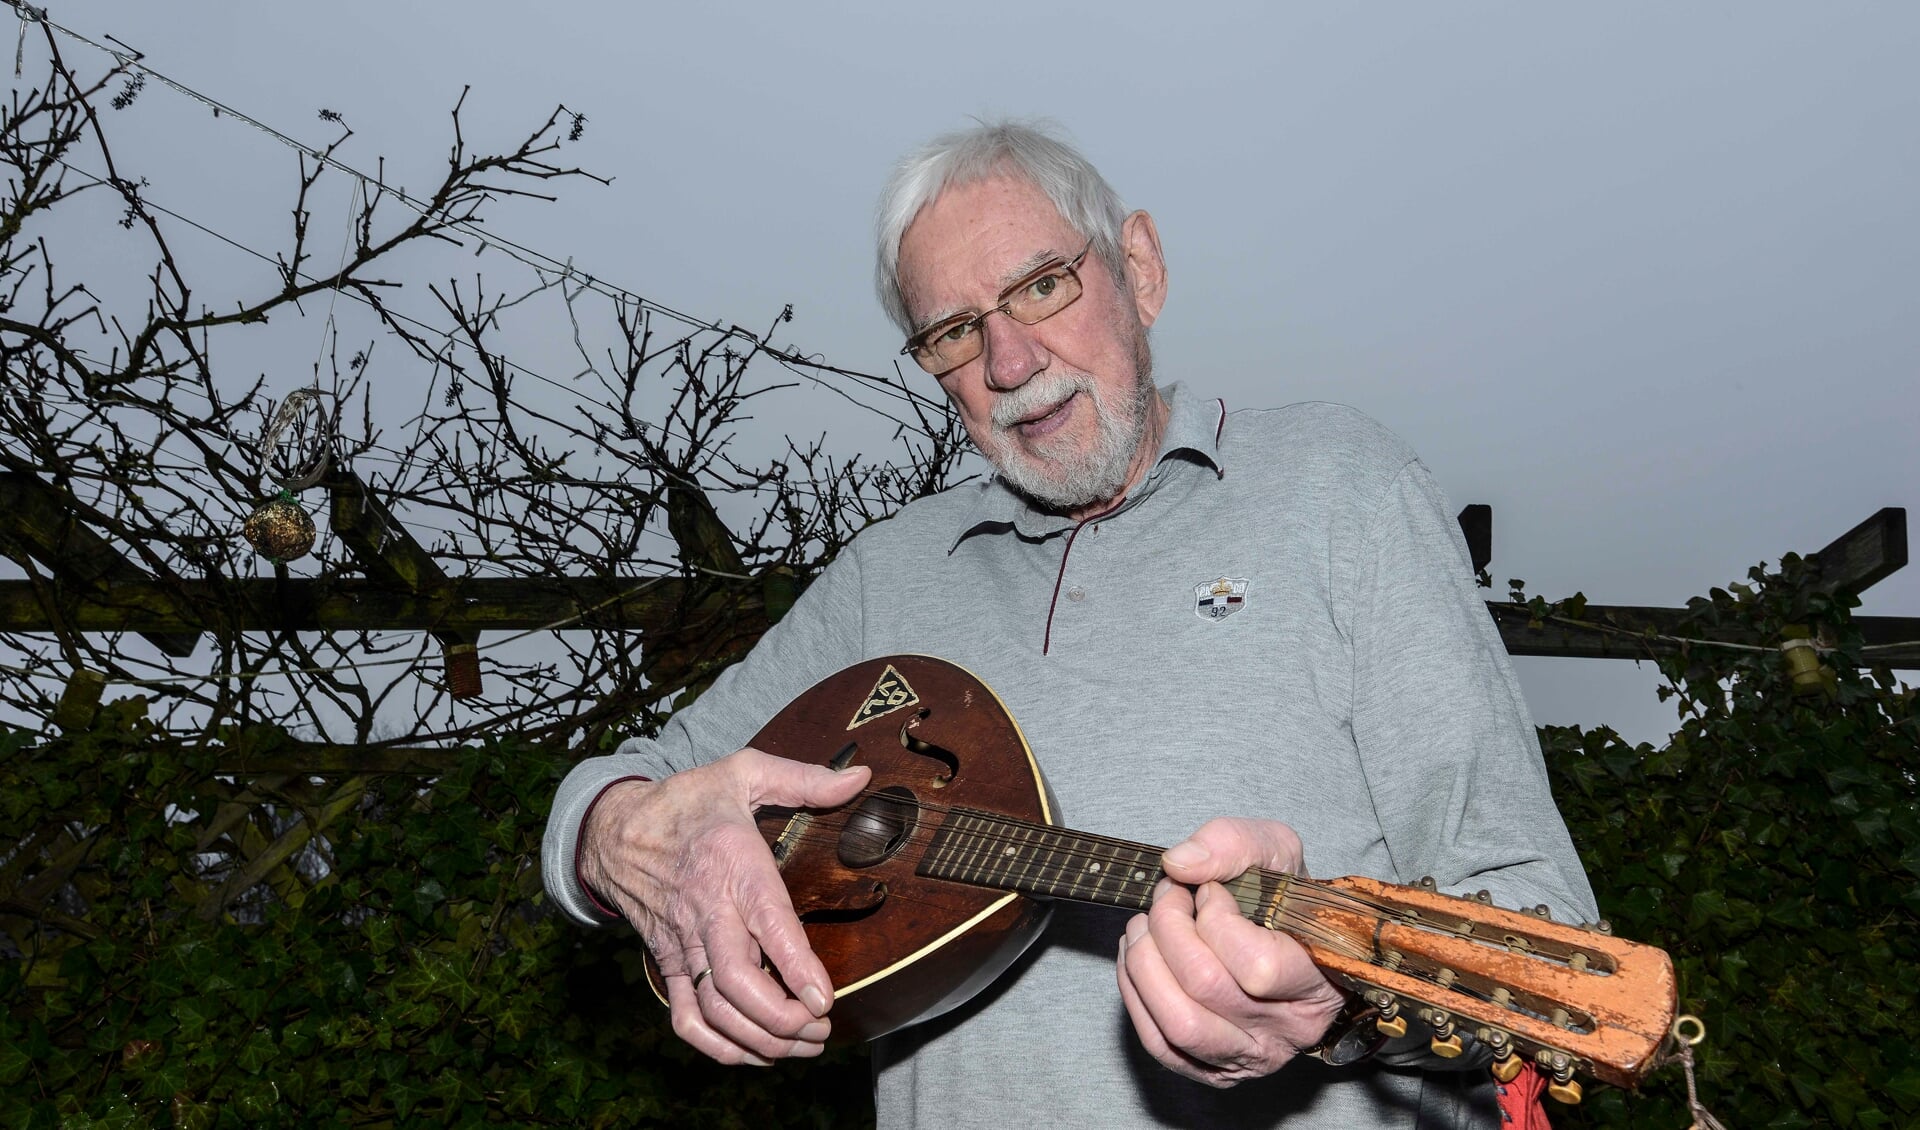 - Min onkel tog denne mandolin med fra Flensborg til Danmark, hvor den fik en særlig historie, fortæller Hans Otto Friedrichsen. Foto: